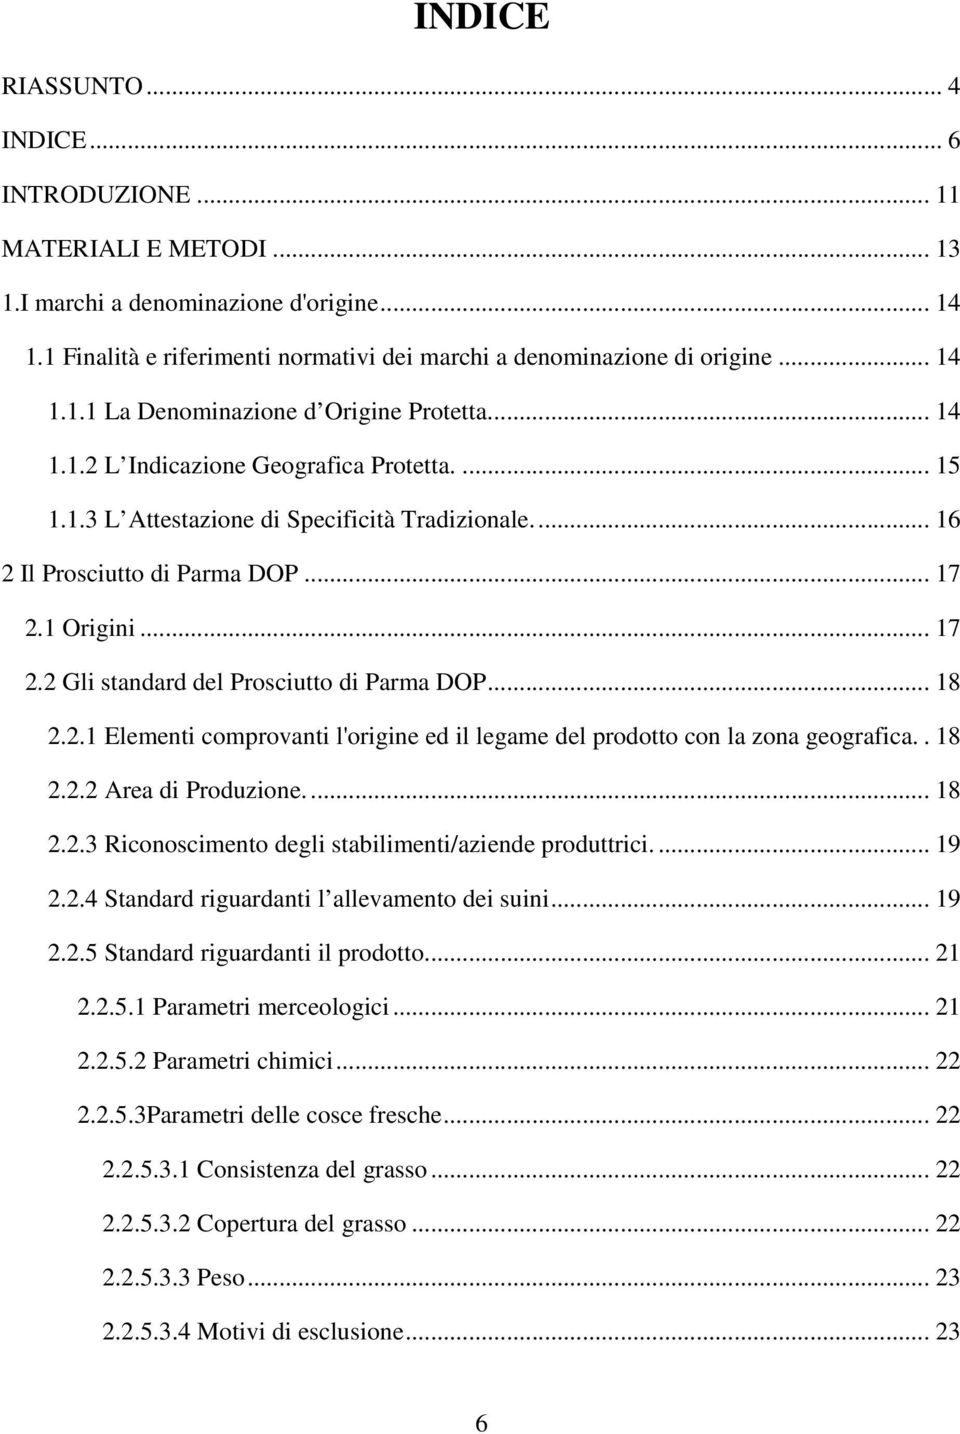 1 Origini... 17 2.2 Gli standard del Prosciutto di Parma DOP... 18 2.2.1 Elementi comprovanti l'origine ed il legame del prodotto con la zona geografica.. 18 2.2.2 Area di Produzione.... 18 2.2.3 Riconoscimento degli stabilimenti/aziende produttrici.